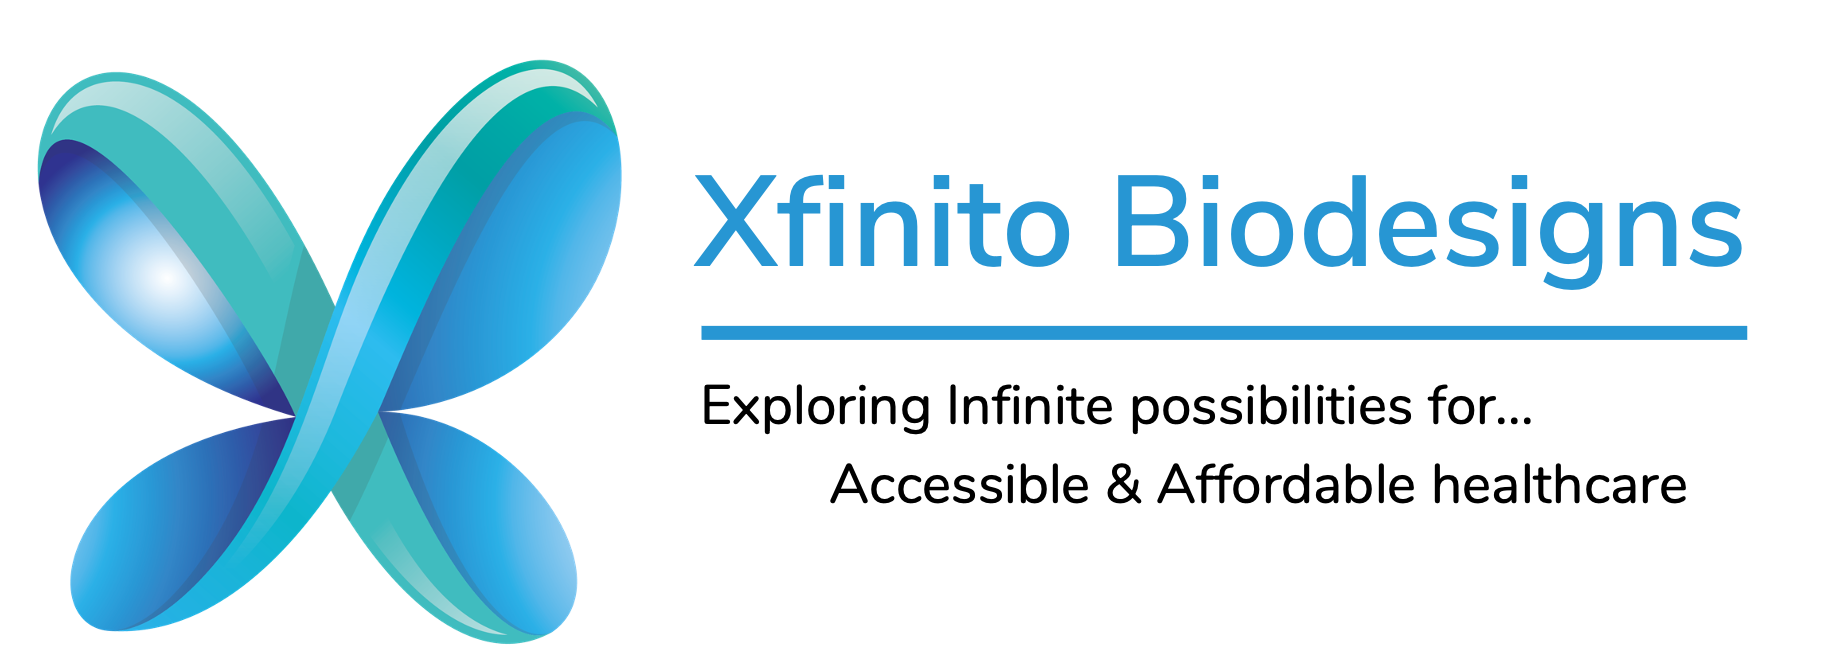 Xfinito Biodesigns